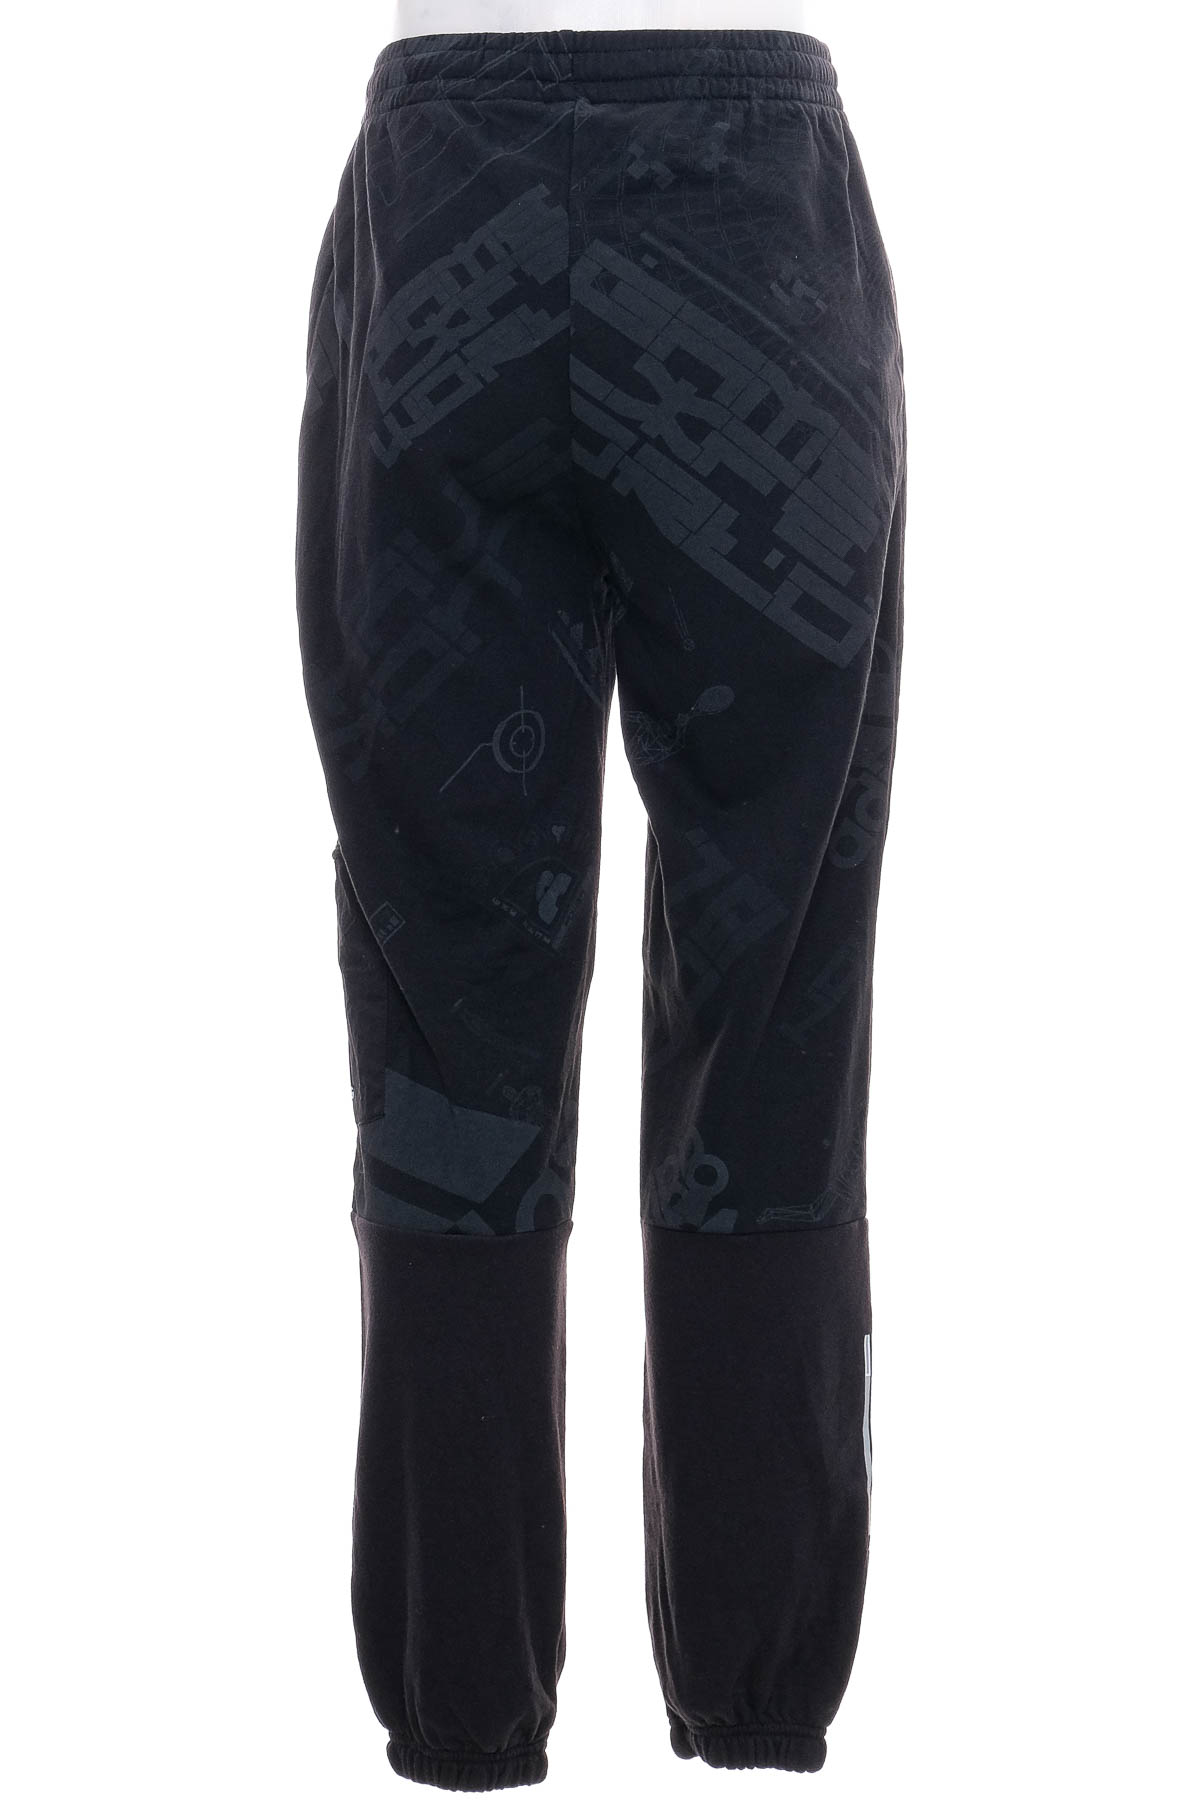 Pantaloni de sport pentru băiat - Adidas - 1